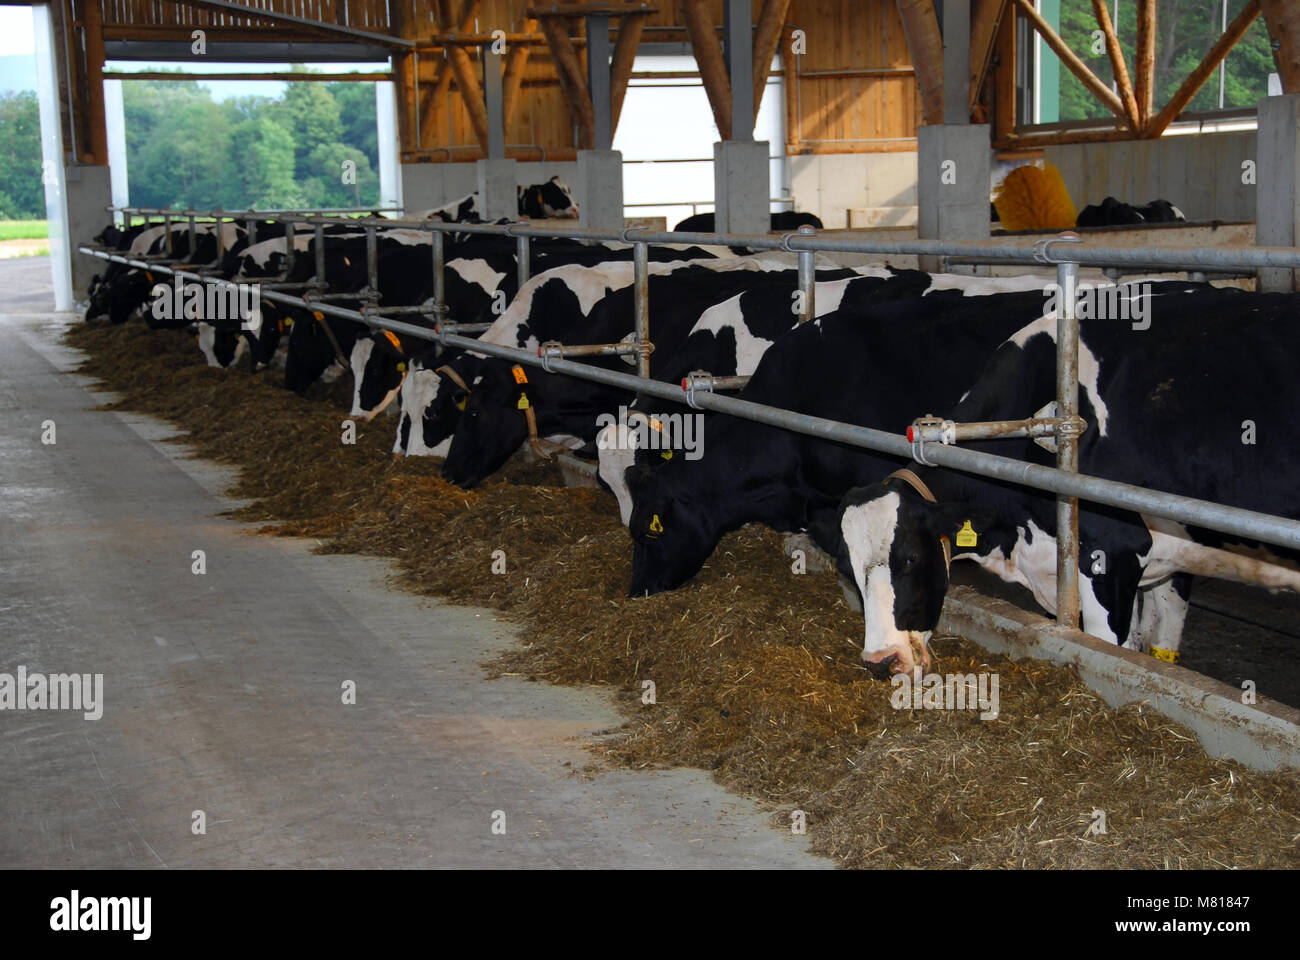 cattle barn inside 15 Stock Photo